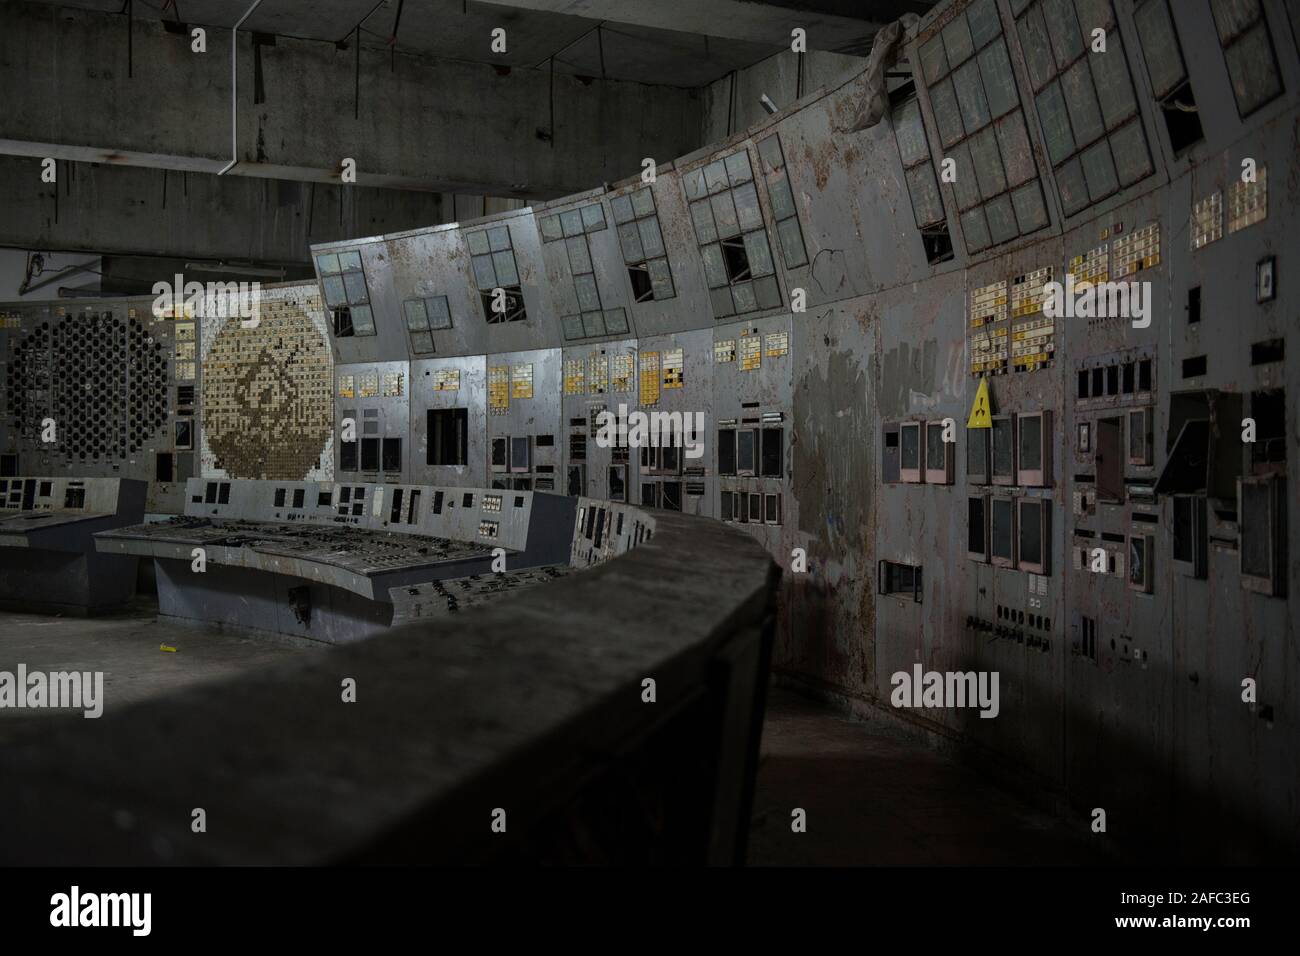 La sala di controllo della centrale di Chernobyl il reattore 4, il sito di tutto il mondo più devastante catastrofe nucleare. L'ex centrale nucleare della sala di controllo è dove ingegneri spegnere il reattore di pompe di raffreddamento come parte di un test di sicurezza nel mese di aprile del 1986, che ha portato ad una esplosione che ha ucciso almeno 28 persone nelle immediate conseguenze e contaminato la zona circostante. La camera si trova al di sotto di una 36.000 tonnellate di contenimento in acciaio arch, ha ancora il suo originale le schermate del display e pannelli di pulsanti di comando. Chernobyl, Ivankiv Raion, Oblast di Kiev, Ucraina, Europa Foto Stock